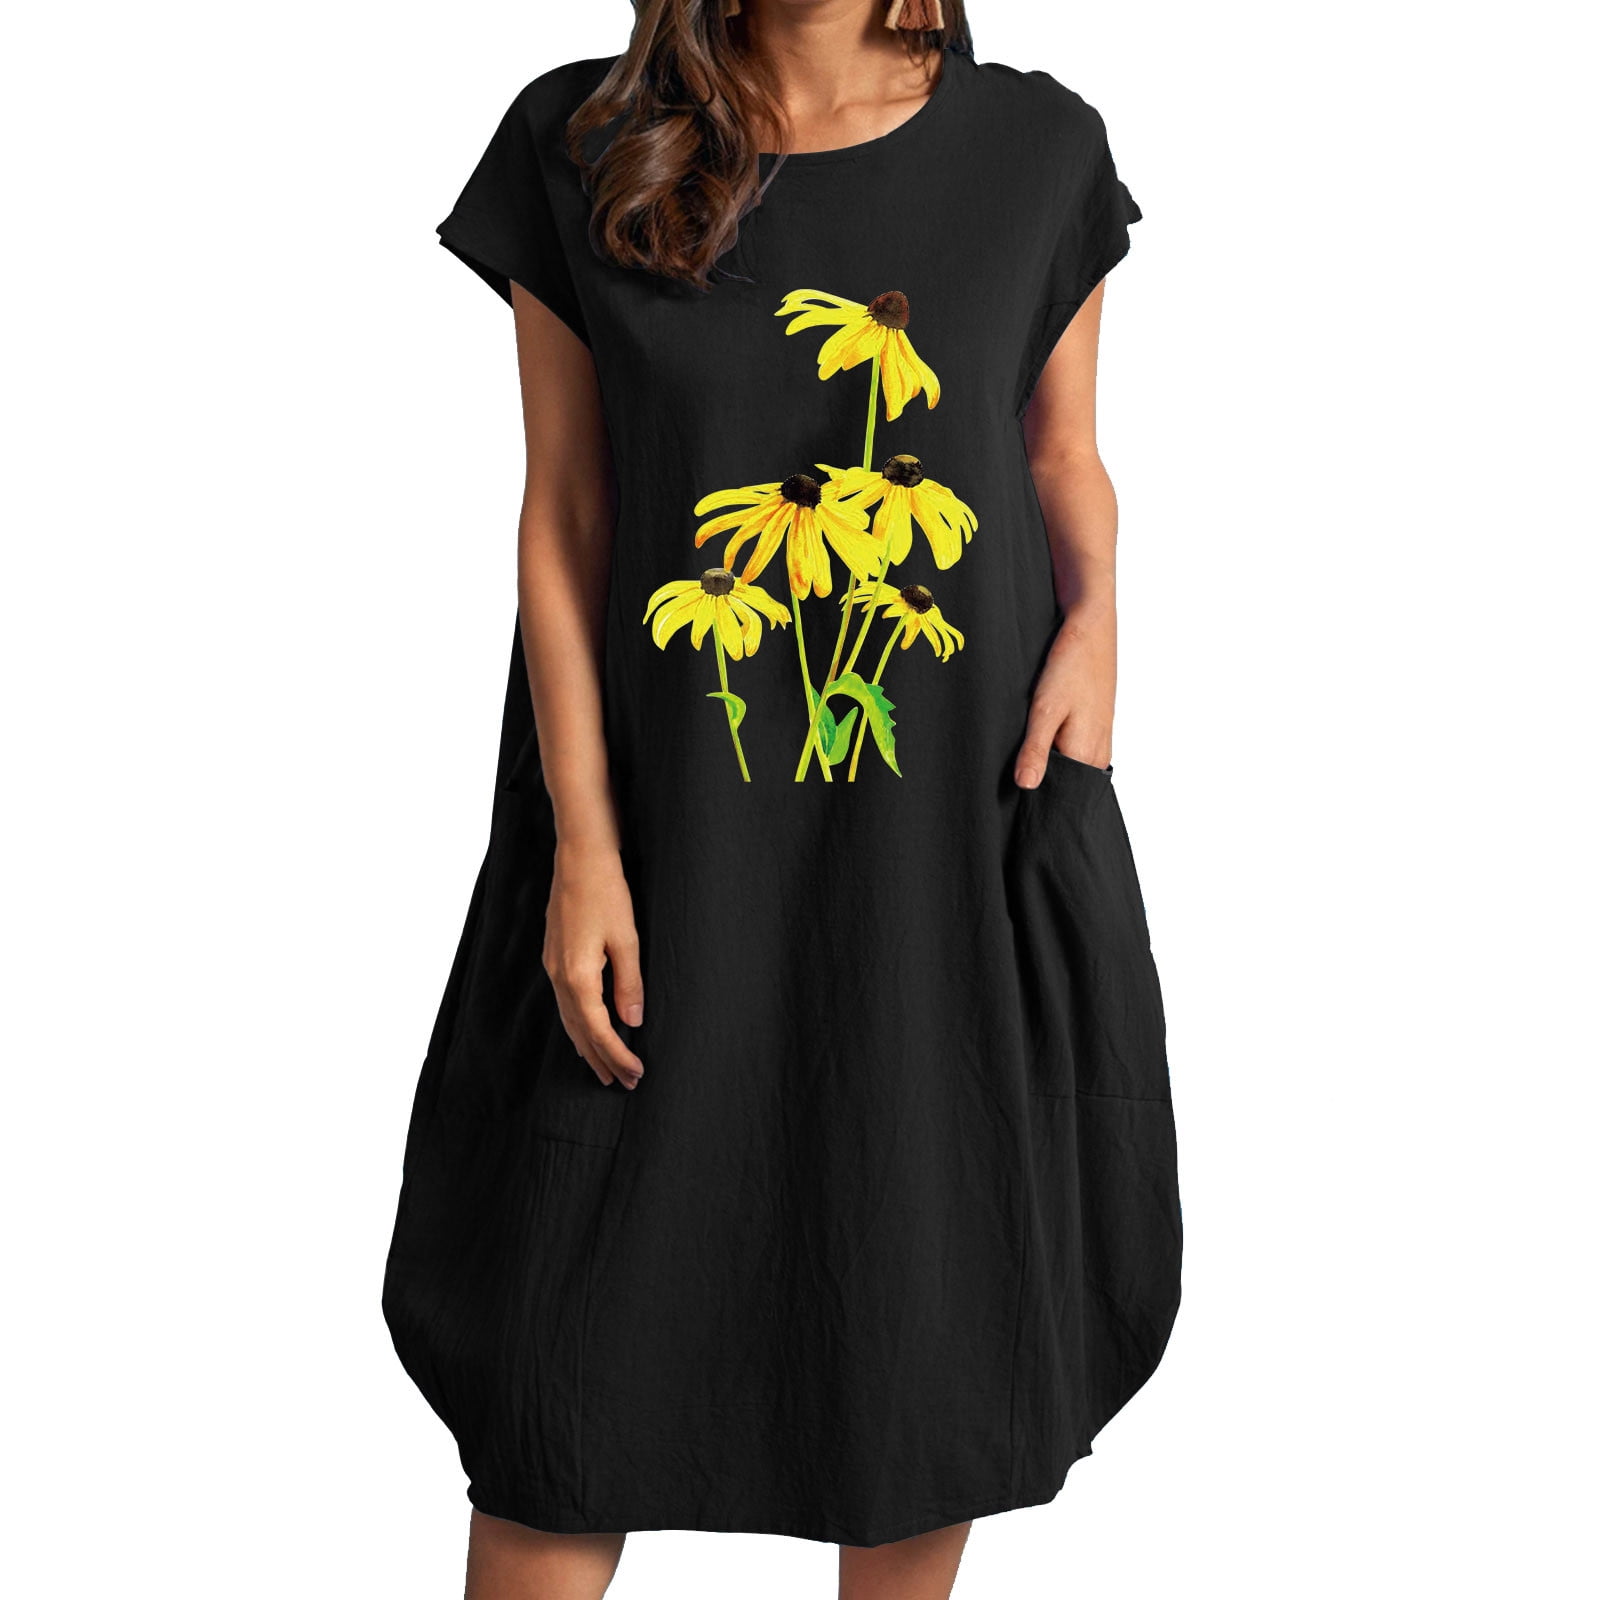 OAVQHLG3B Pocket Crewneck Sunflower Dress for Women Knee-Length Short ...